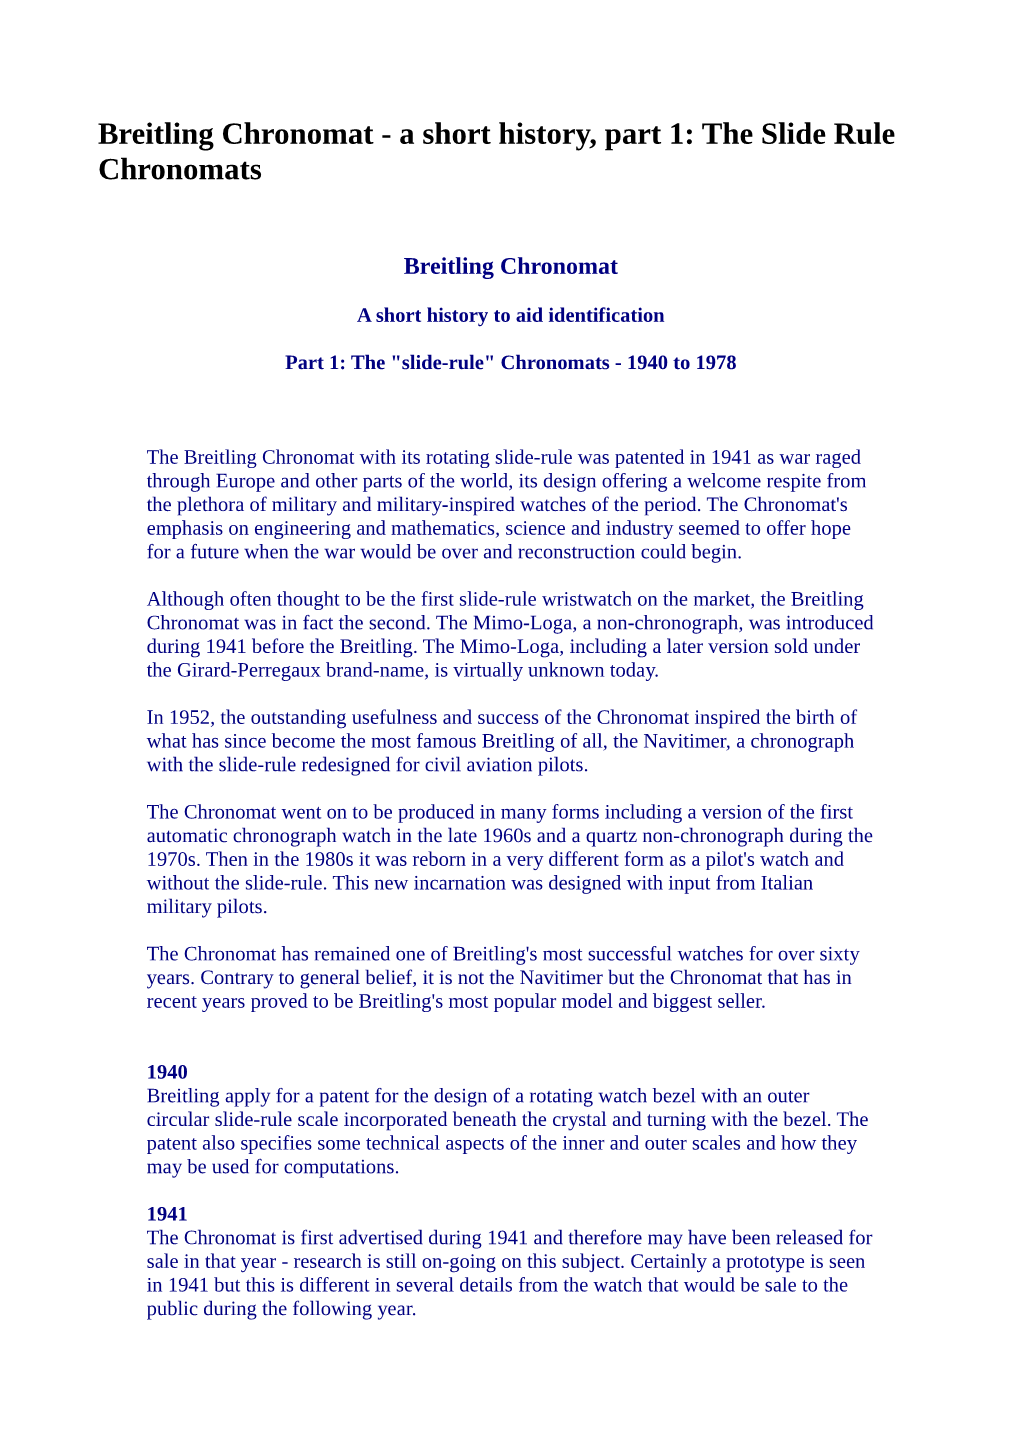 Breitling Chronomat - a Short History, Part 1: the Slide Rule Chronomats